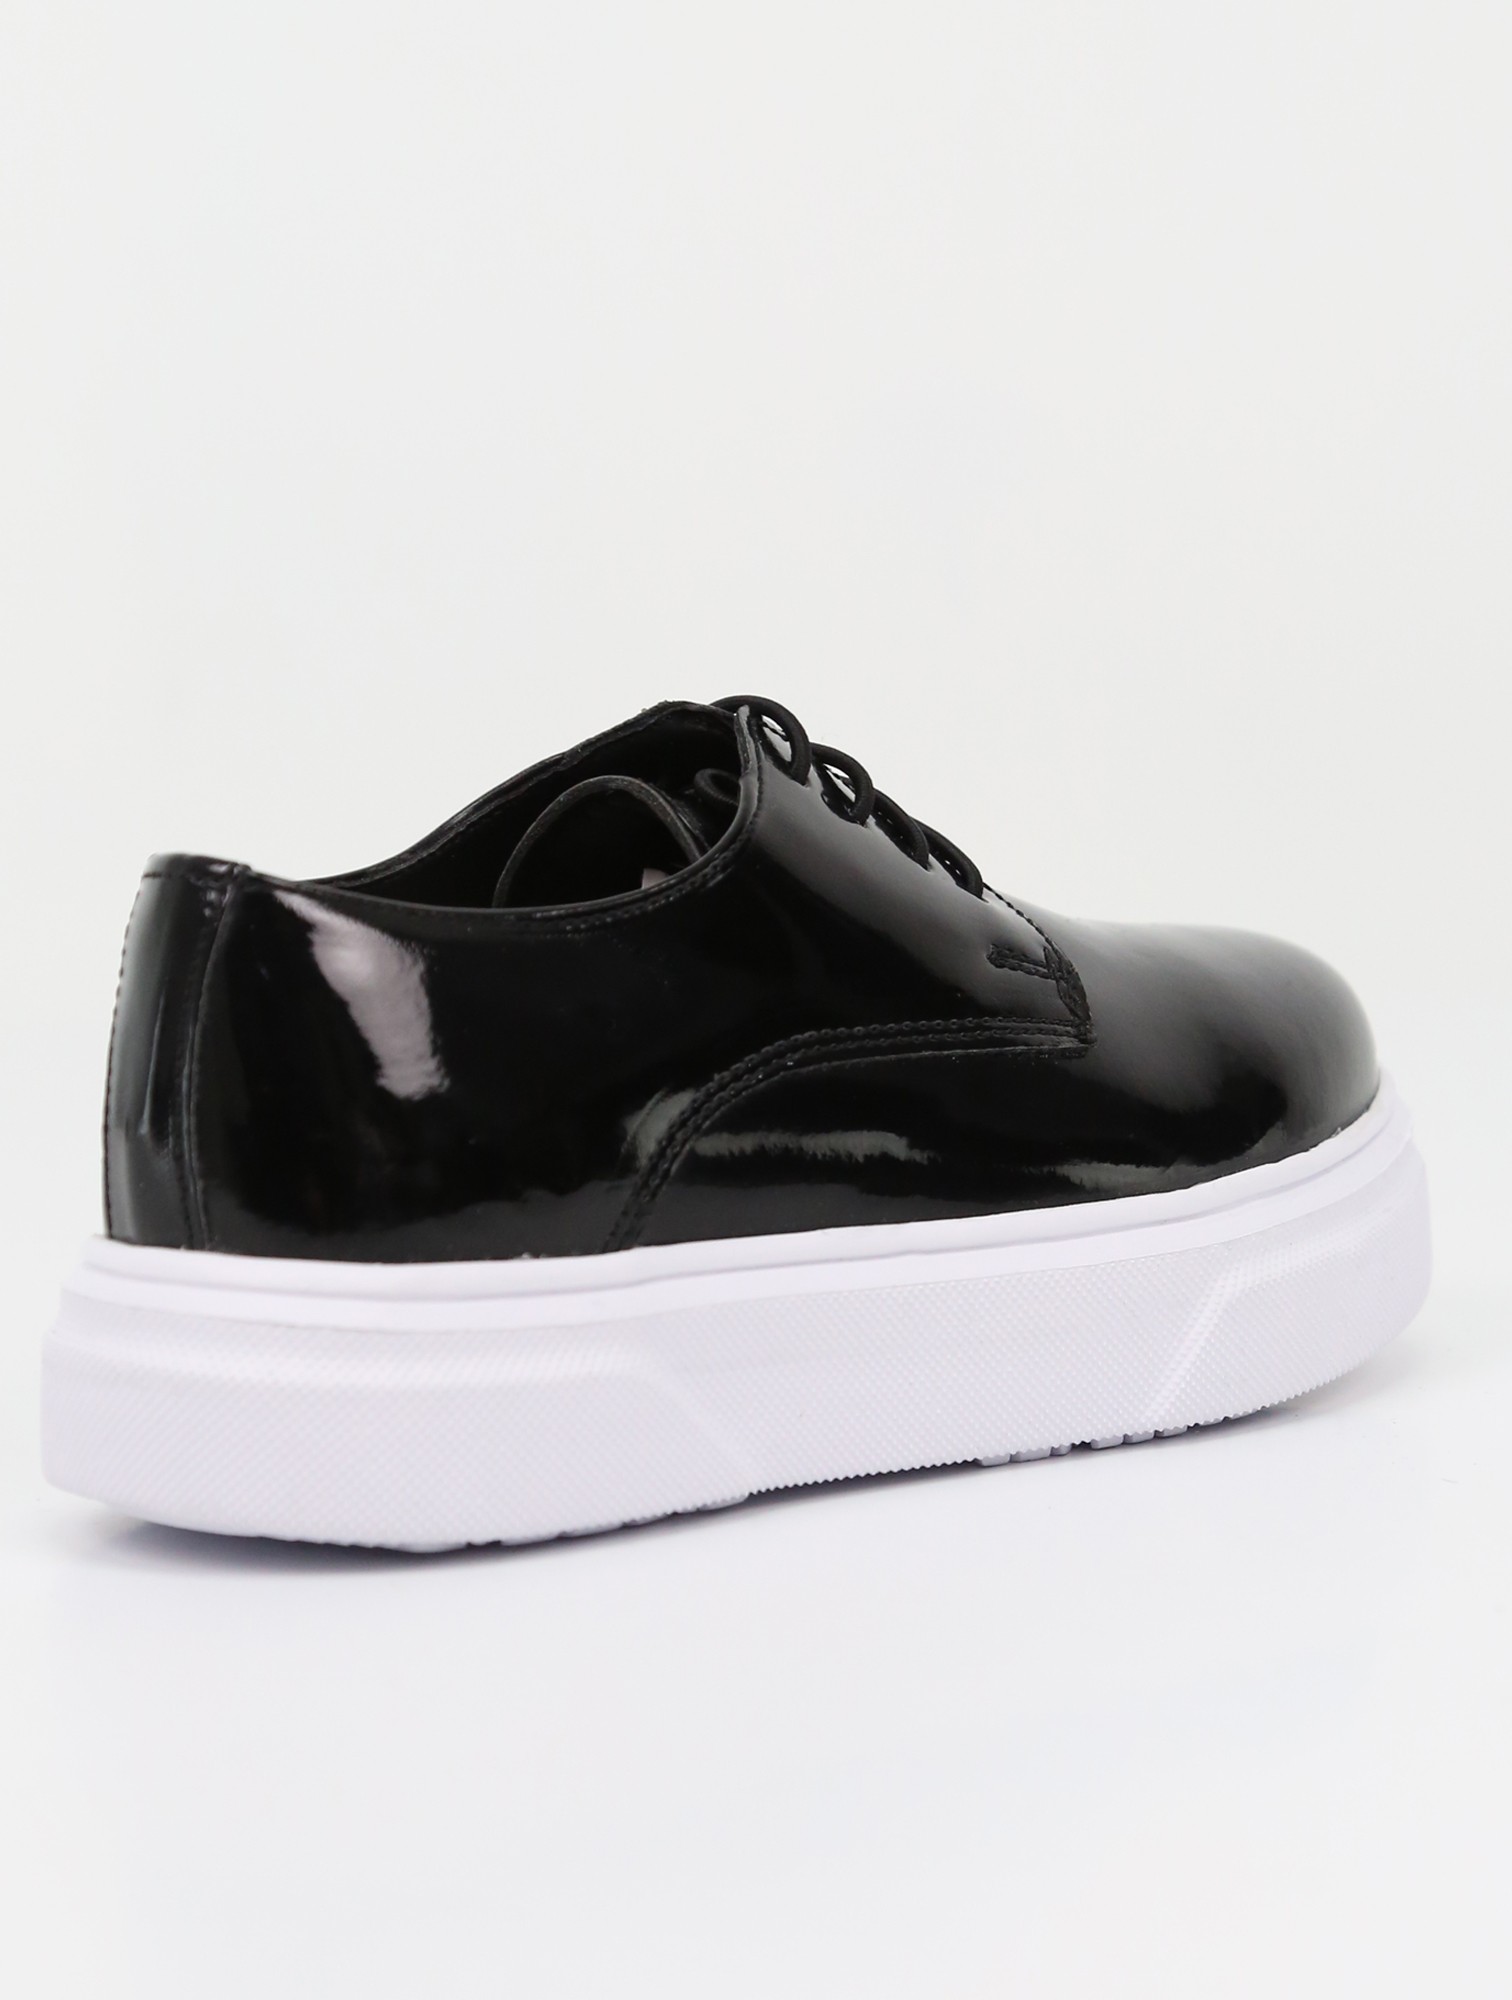 SIRRI Schwarze Slip-On Lackschuhe für Jungen, Sneaker im Gibson-Design für formelle und Freizeitkleidung